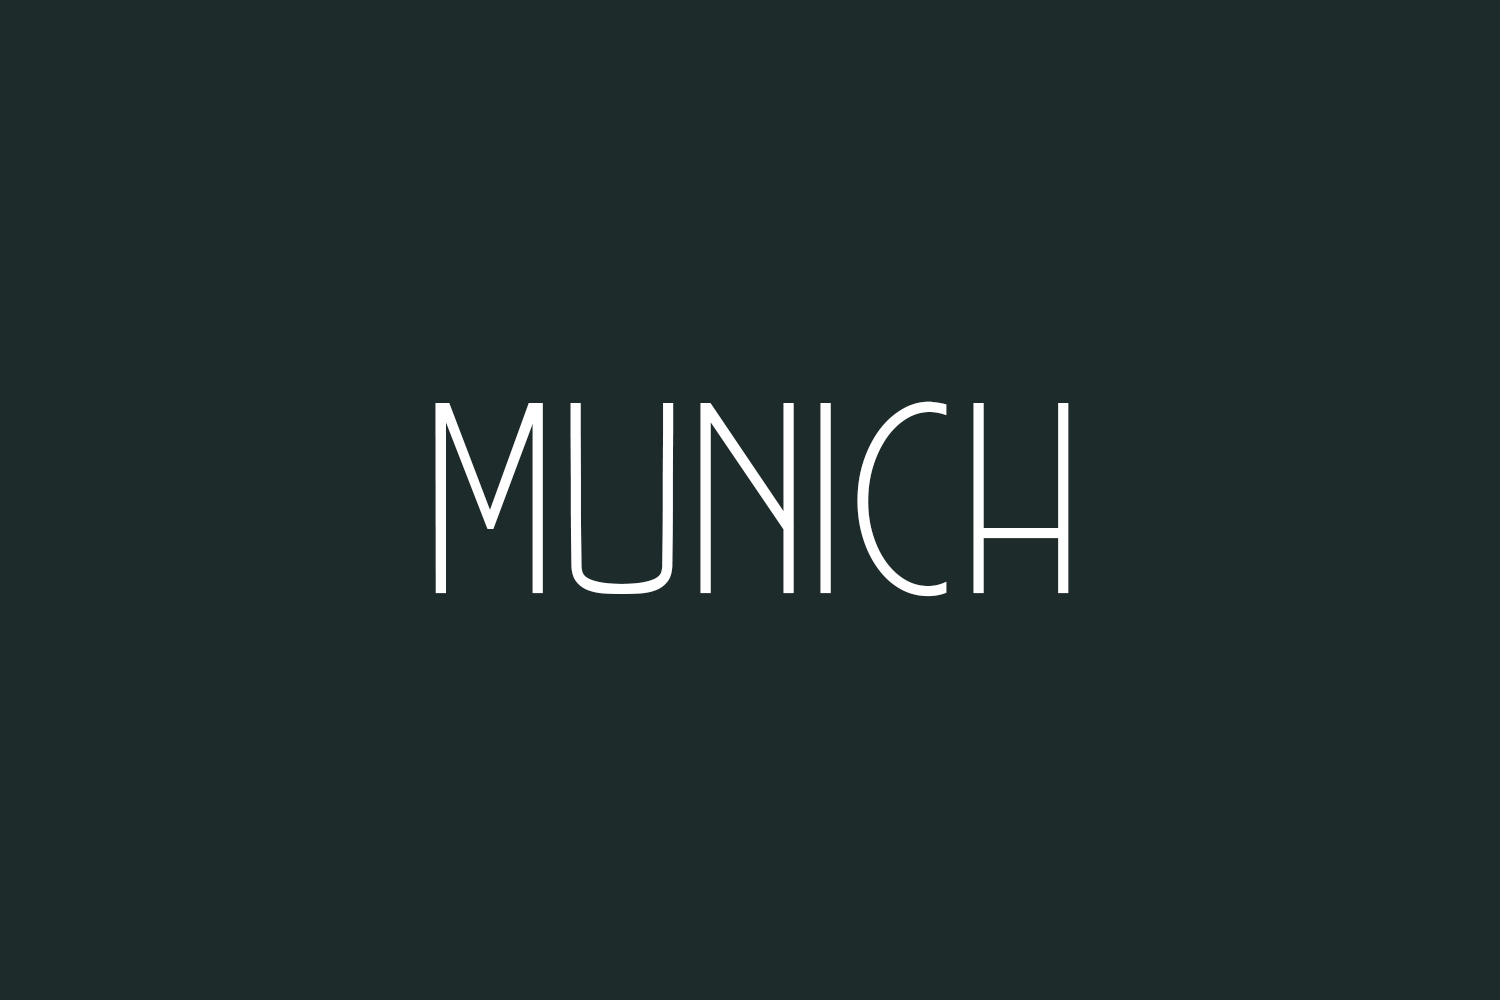 Munich Free Font